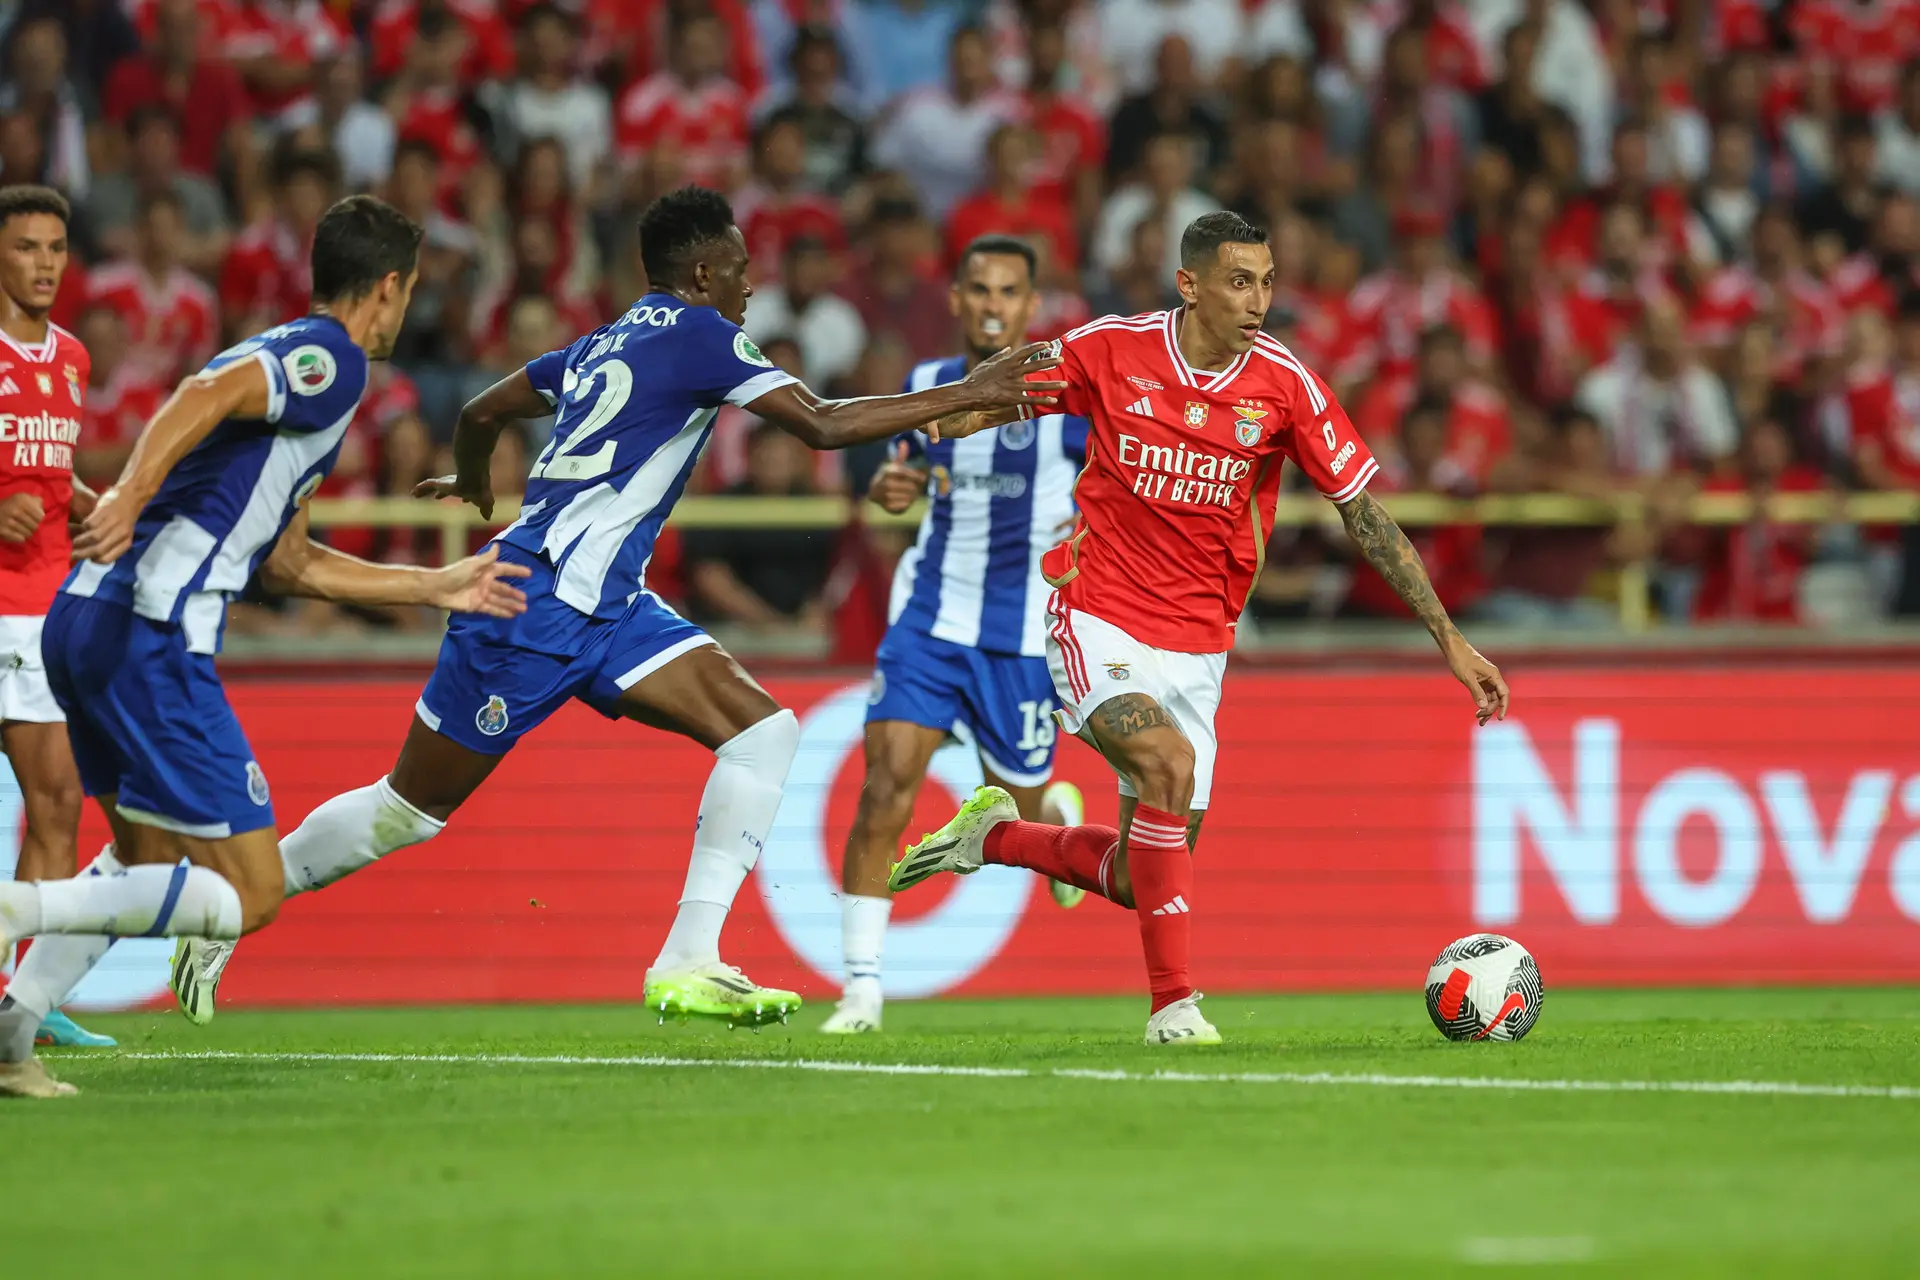 Futebol: FC Porto e SL Benfica empataram no Clássico